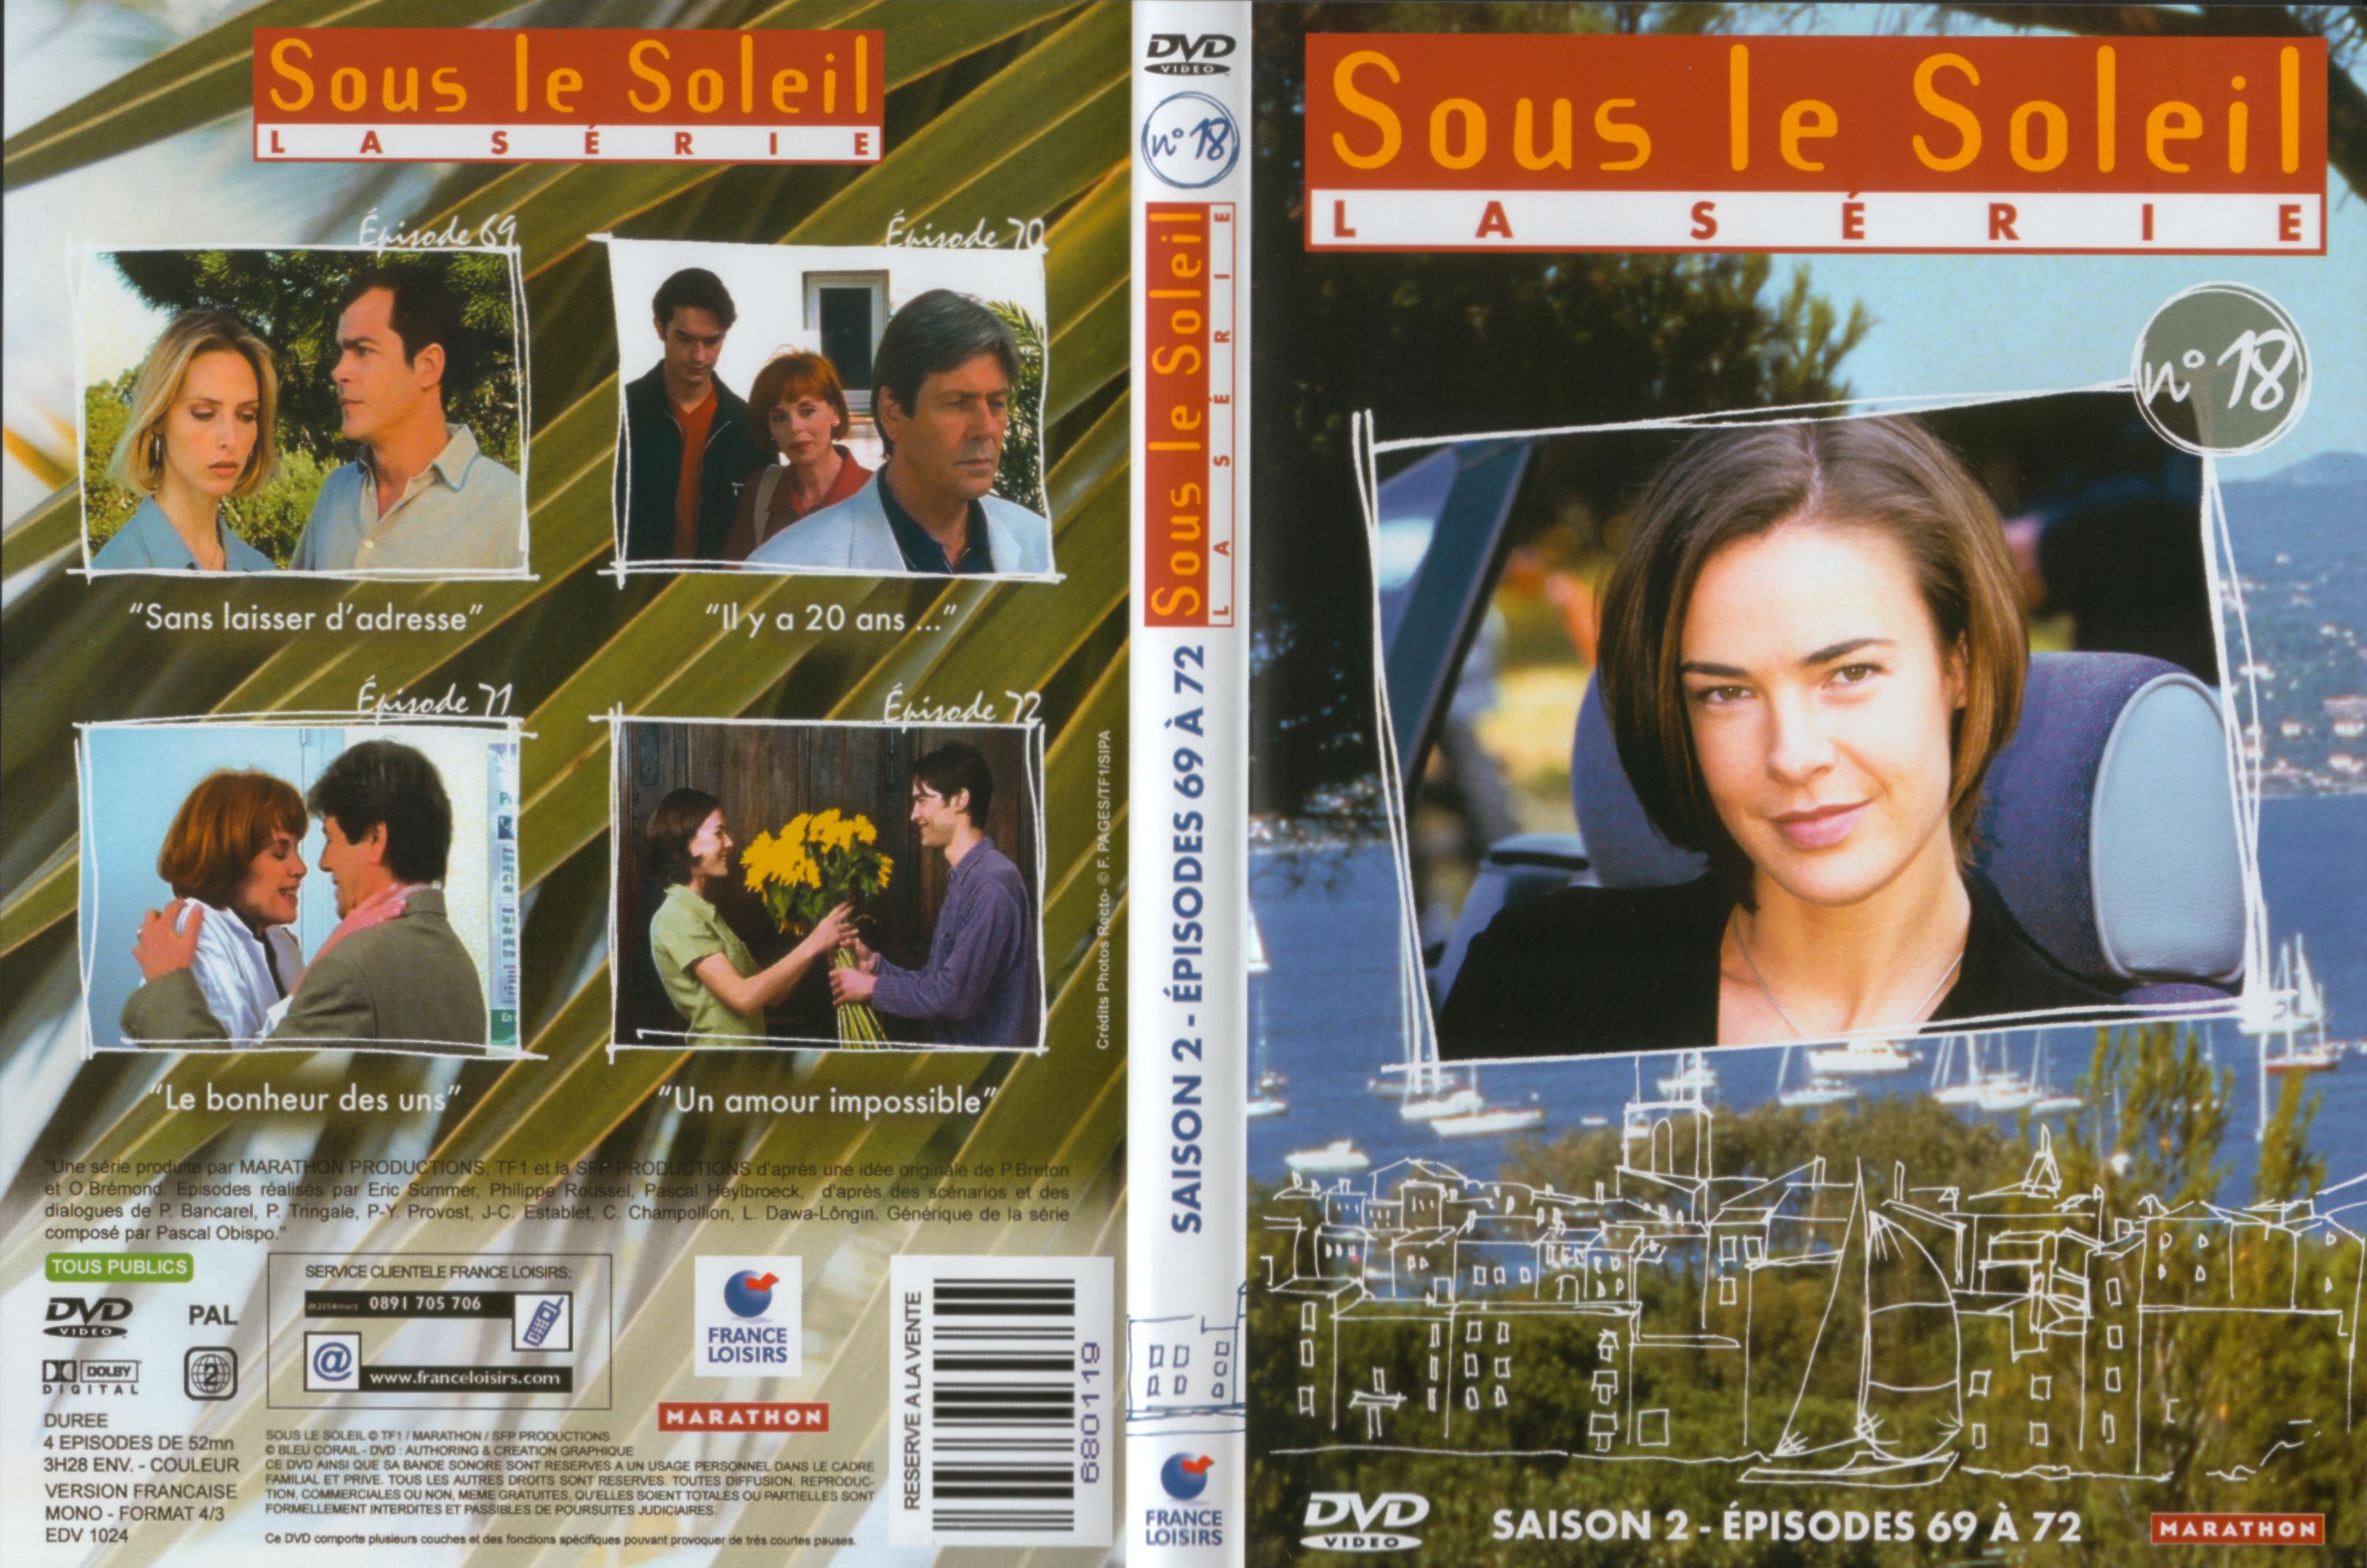 Jaquette DVD Sous le soleil saison 2 vol 18